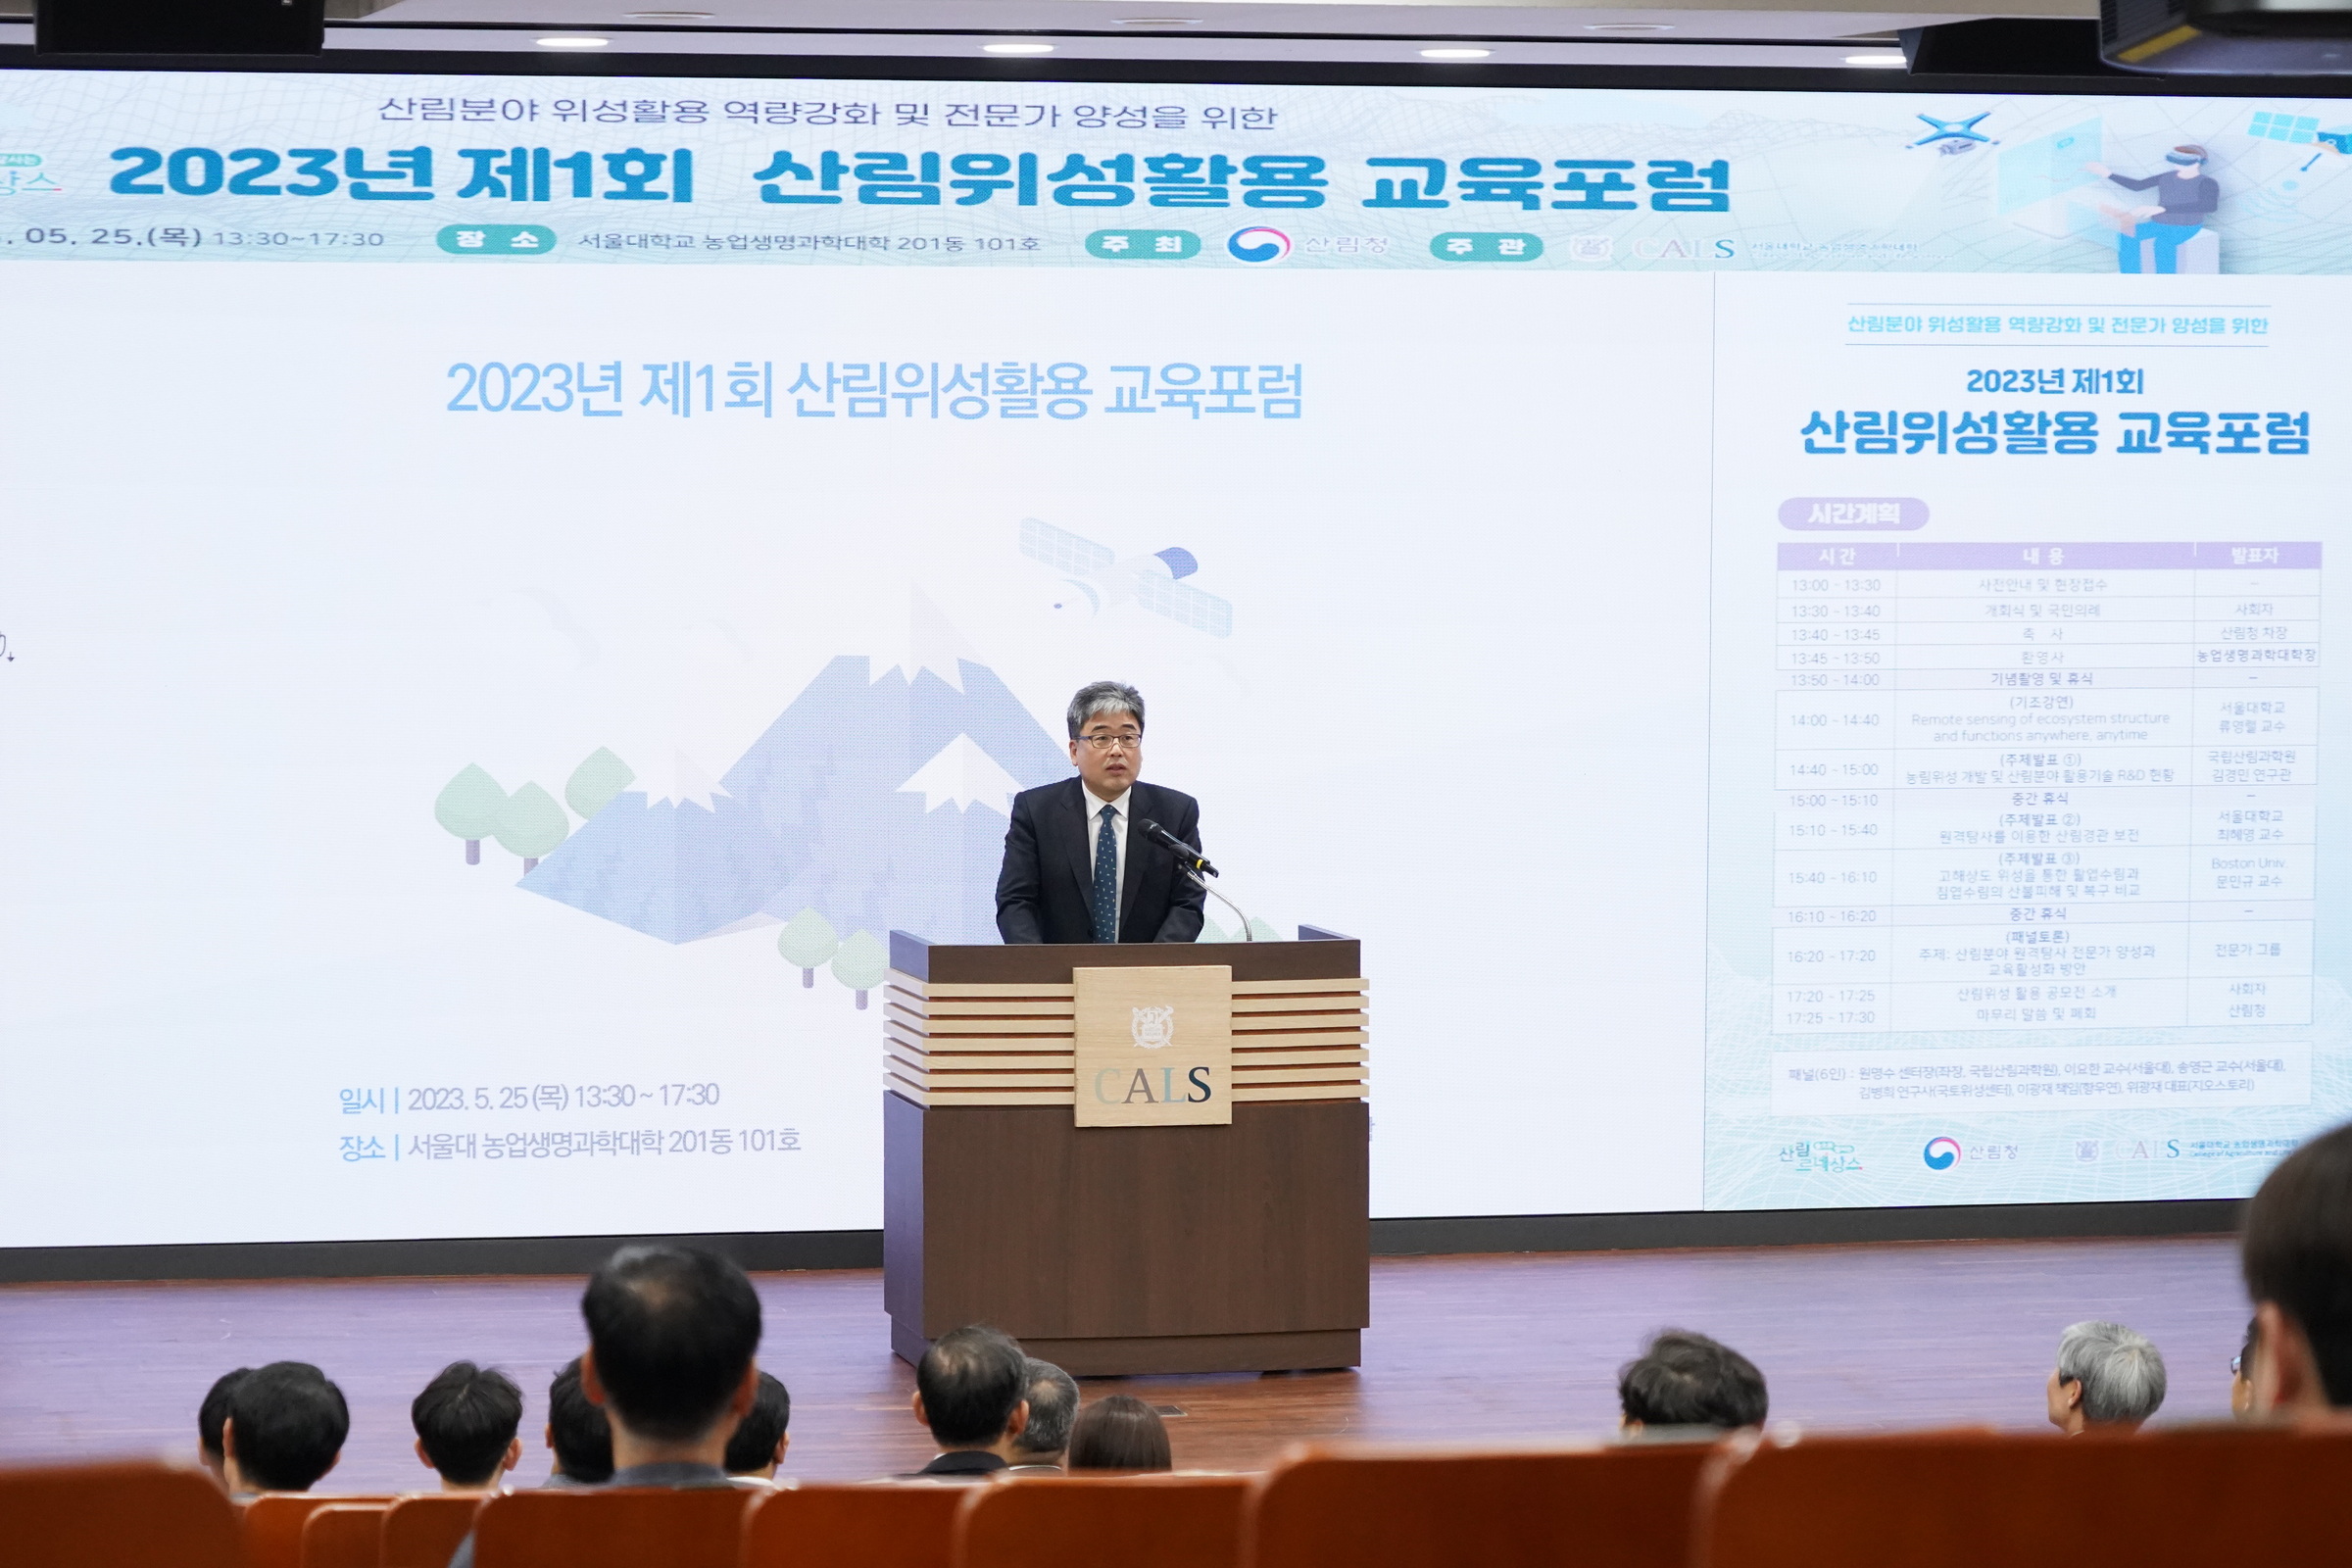 산림위성 활용 전문가 양성 교육토론회(포럼) 개최 